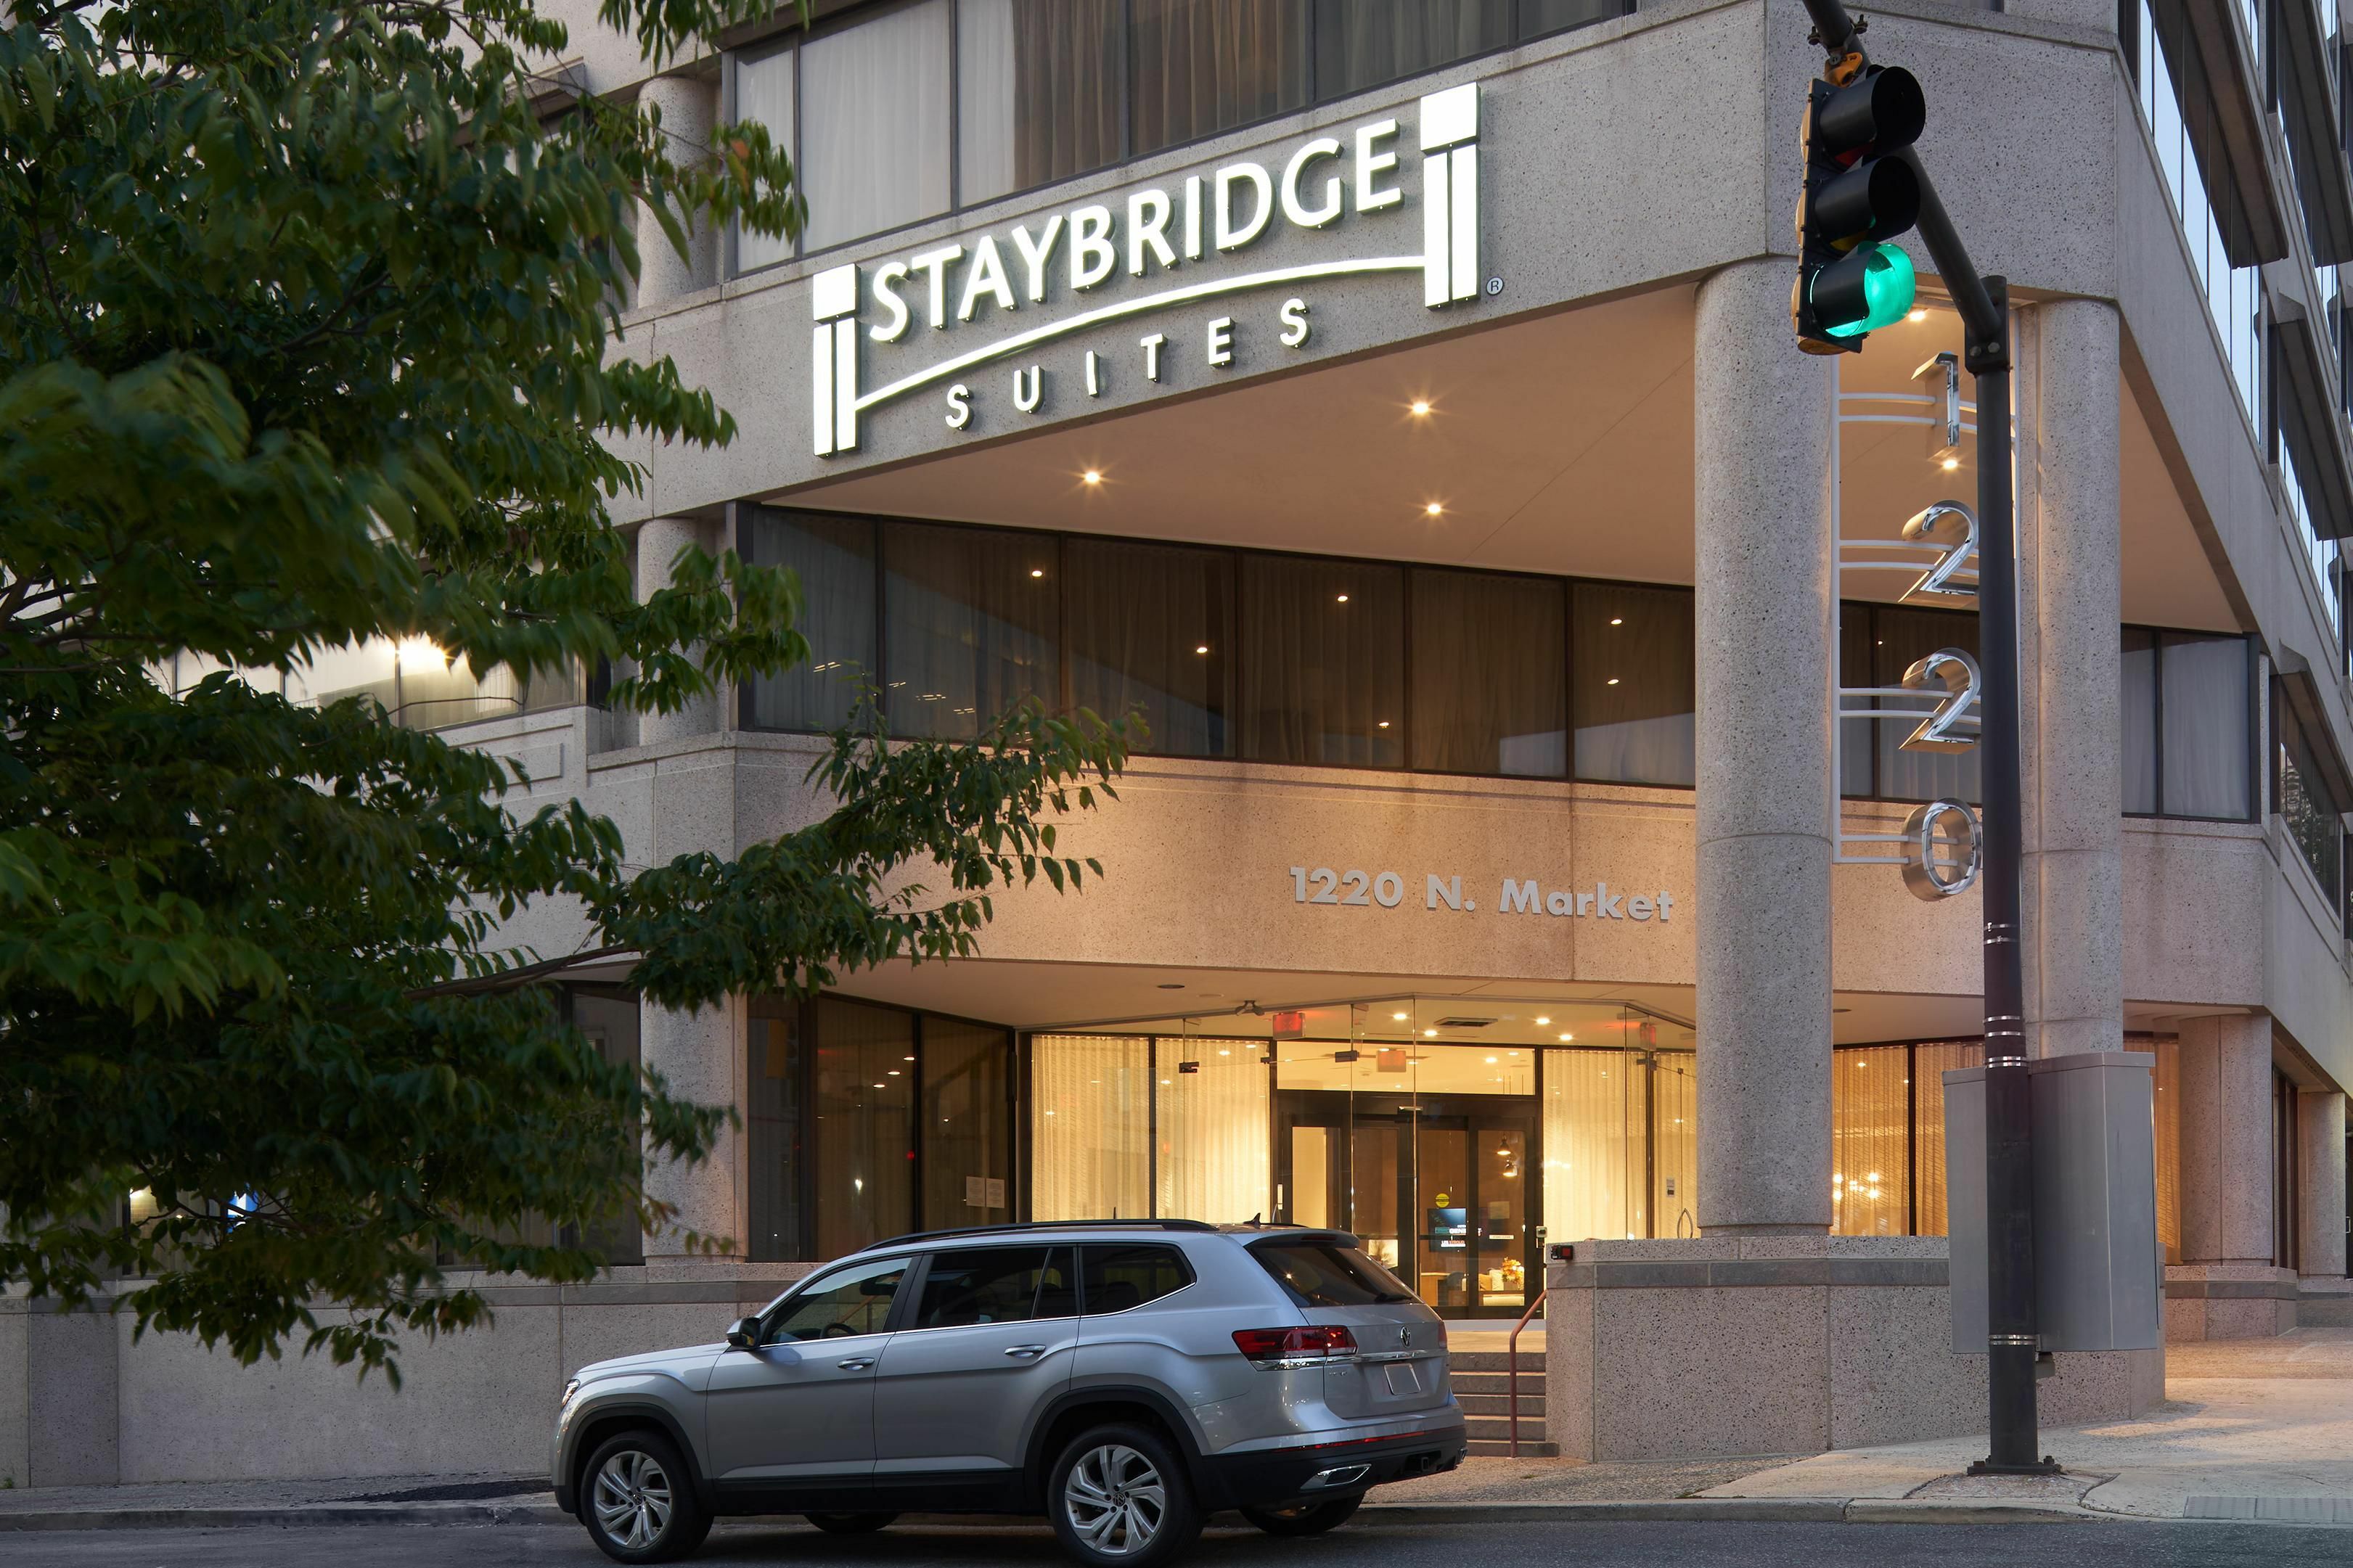 Photo of Staybridge Suites Wilmington Downtown, Wilmington, DE